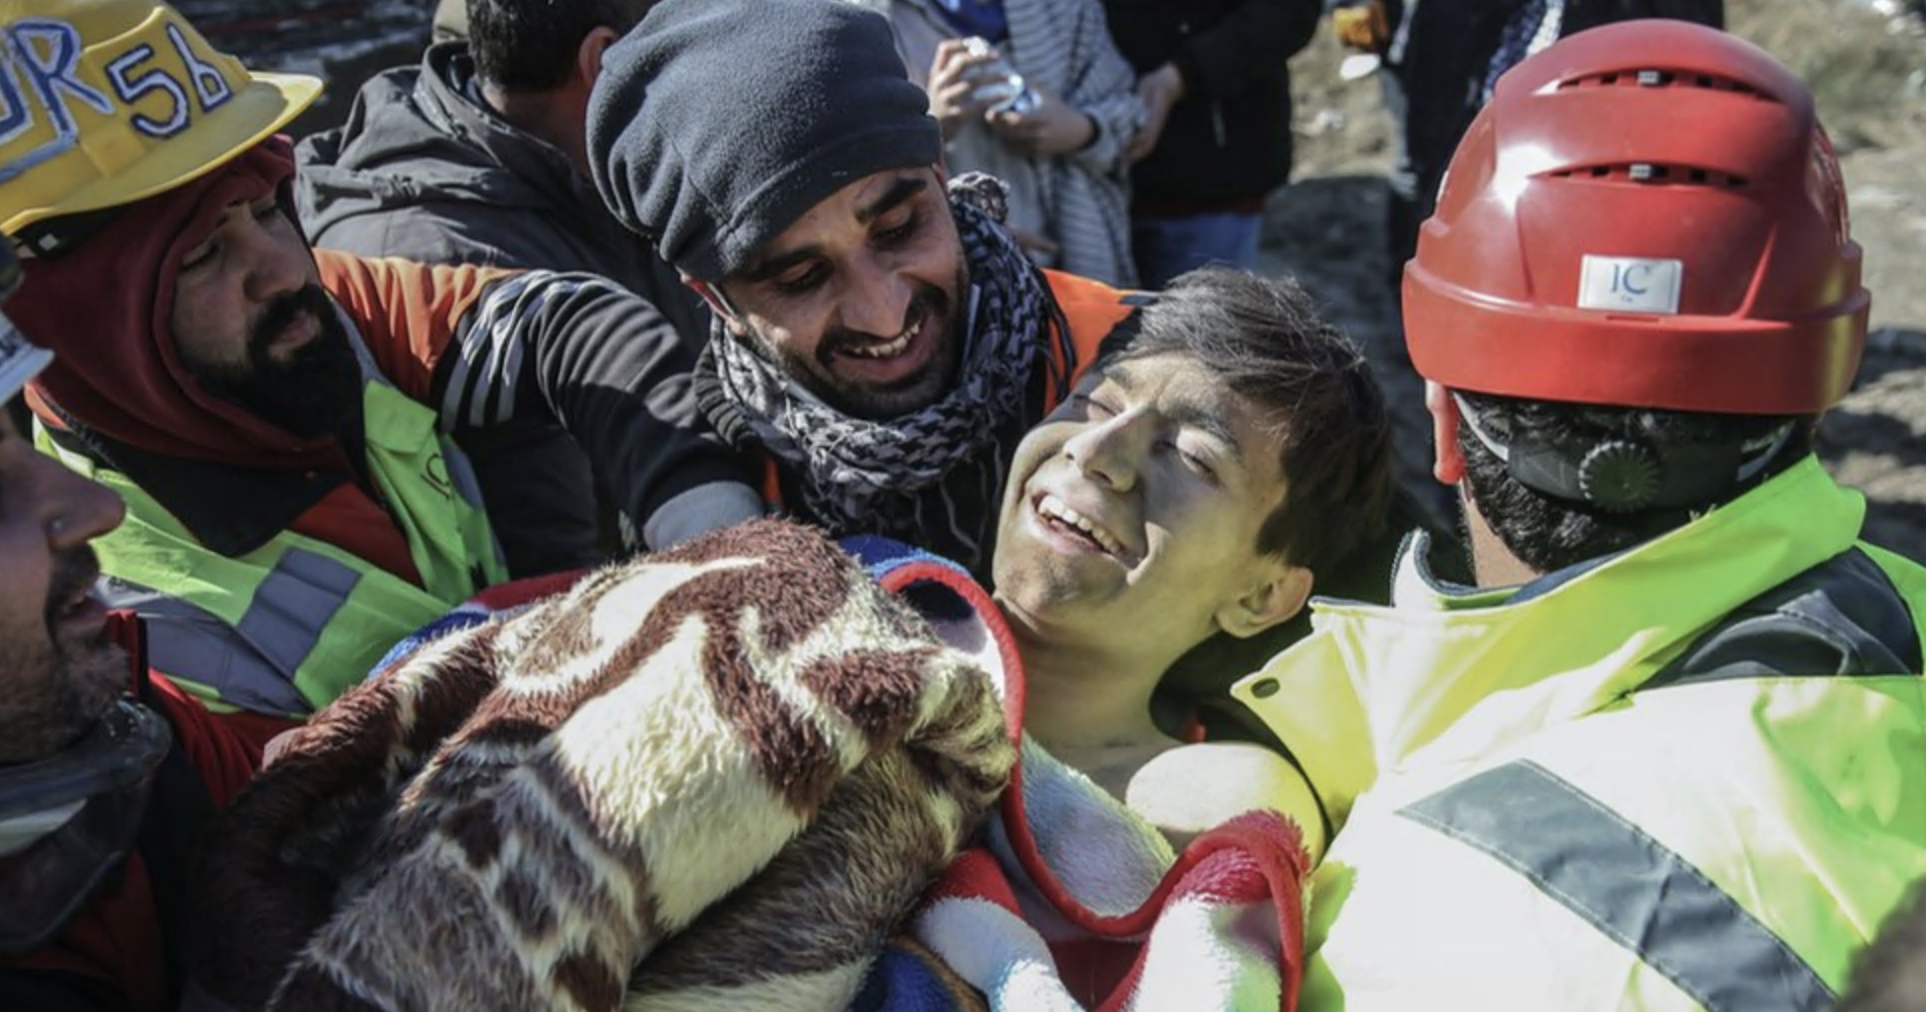 Um jovem rapaz sorri ao ser resgatado por socorristas